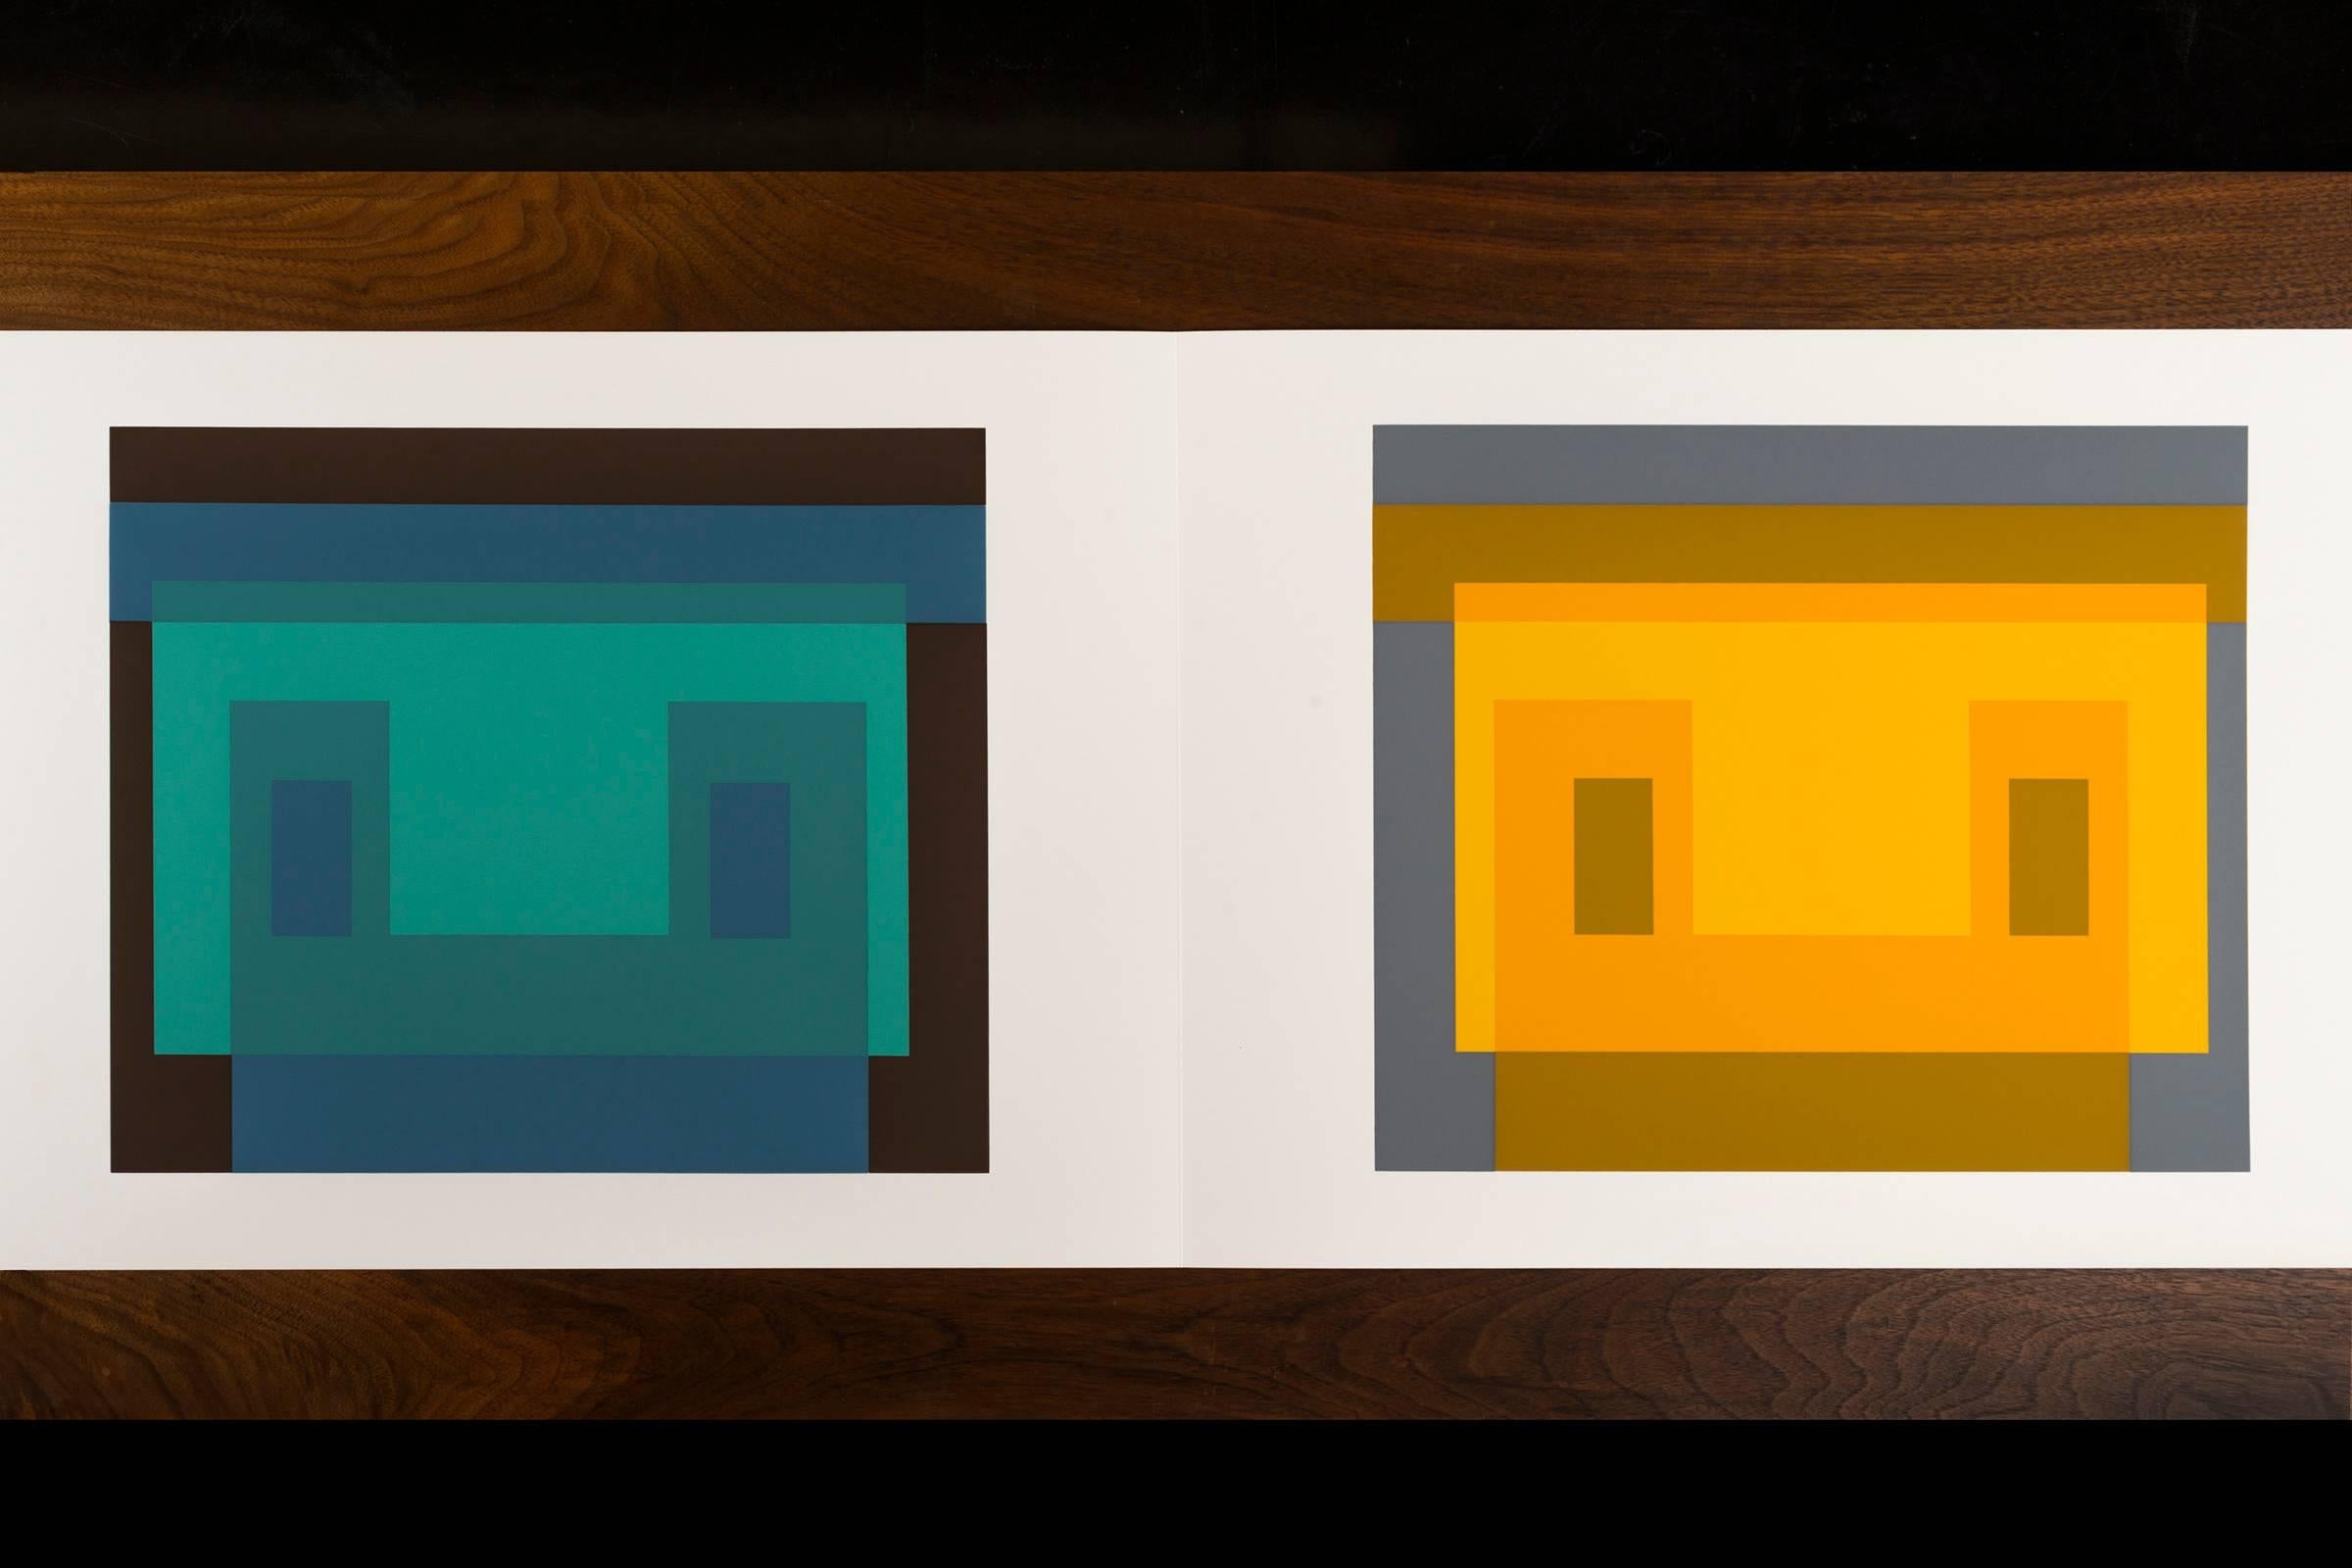 Josef Albers Formulierungen - Artikulationen I & II Druck #9
Ausgabe 974/ 1000
1972 Siebdruck auf Papier
Geprägt mit den Initialen von Josef Albers, Mappen- und Ordnernummer. Dieses Werk wird von Harry N. Abrams und Ives-Sillman